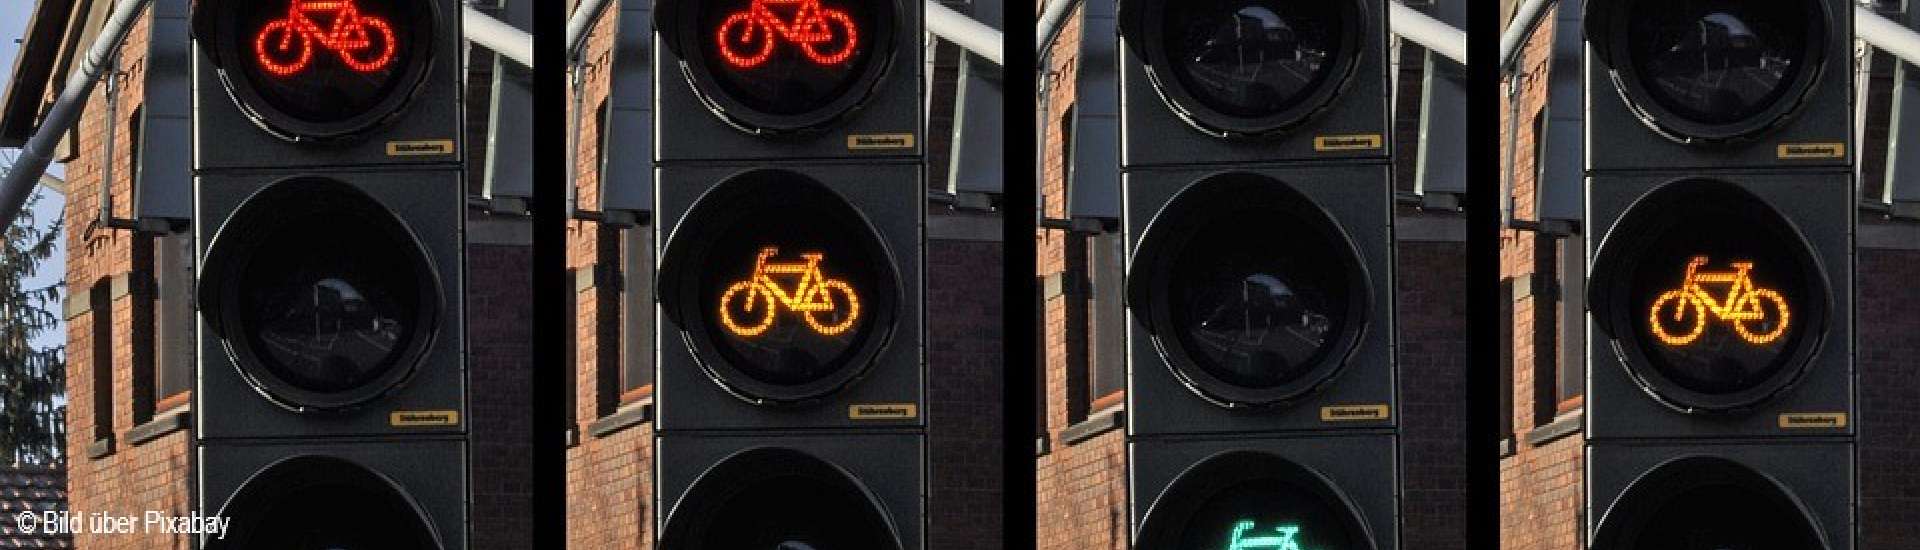 vier Ampeln mit Fahrrad-Symboln